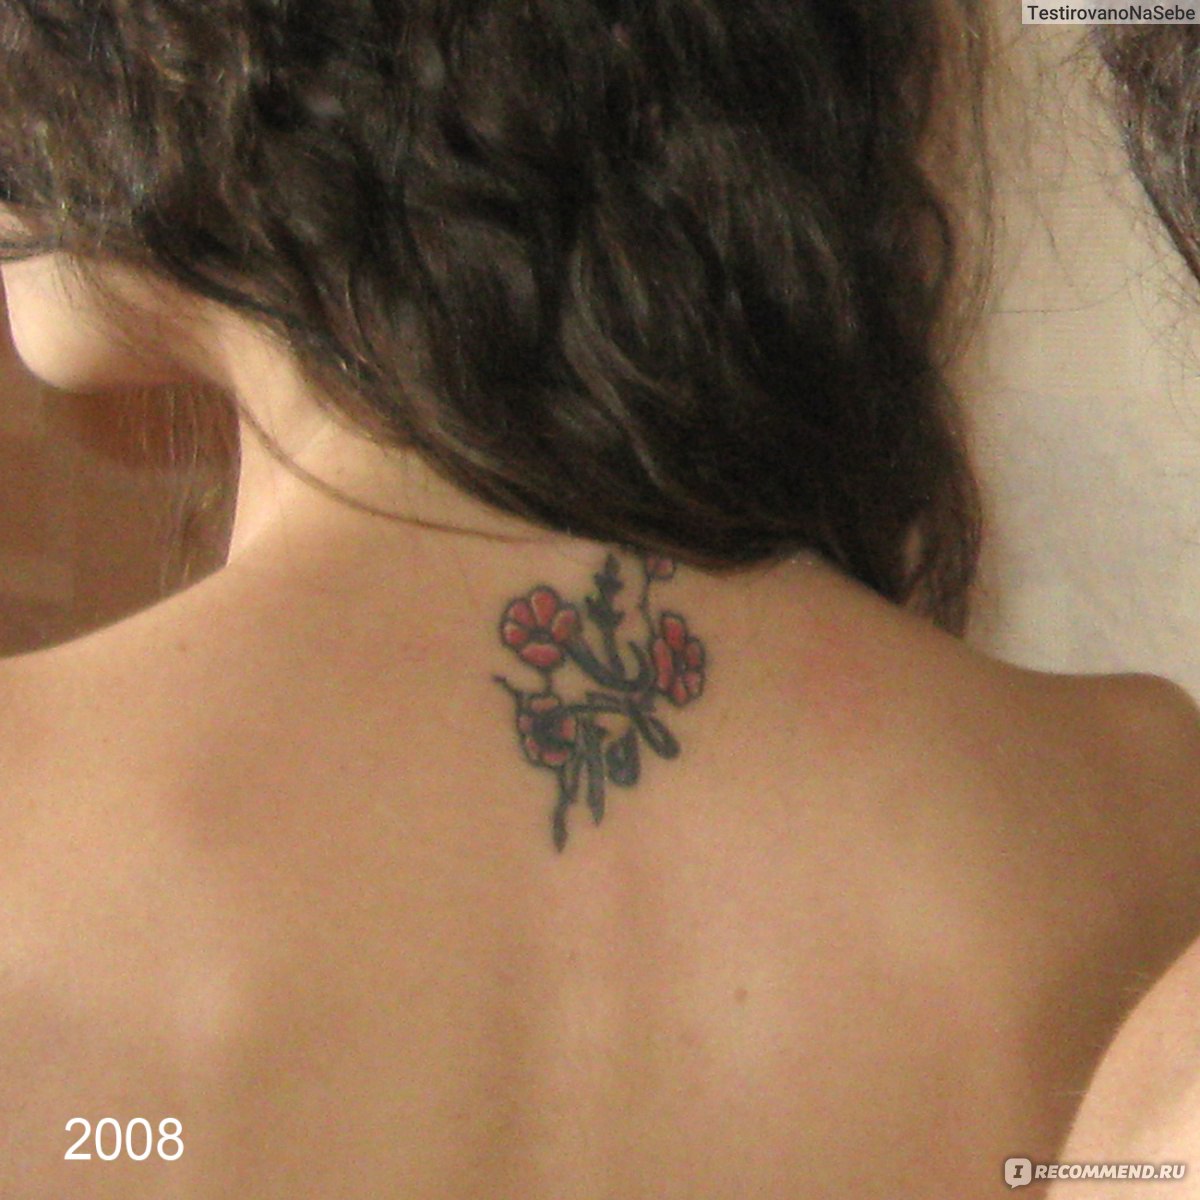 Как вывести тату: методы и способы удаления татуировок лазером? | Блог «Даймонд лазер»